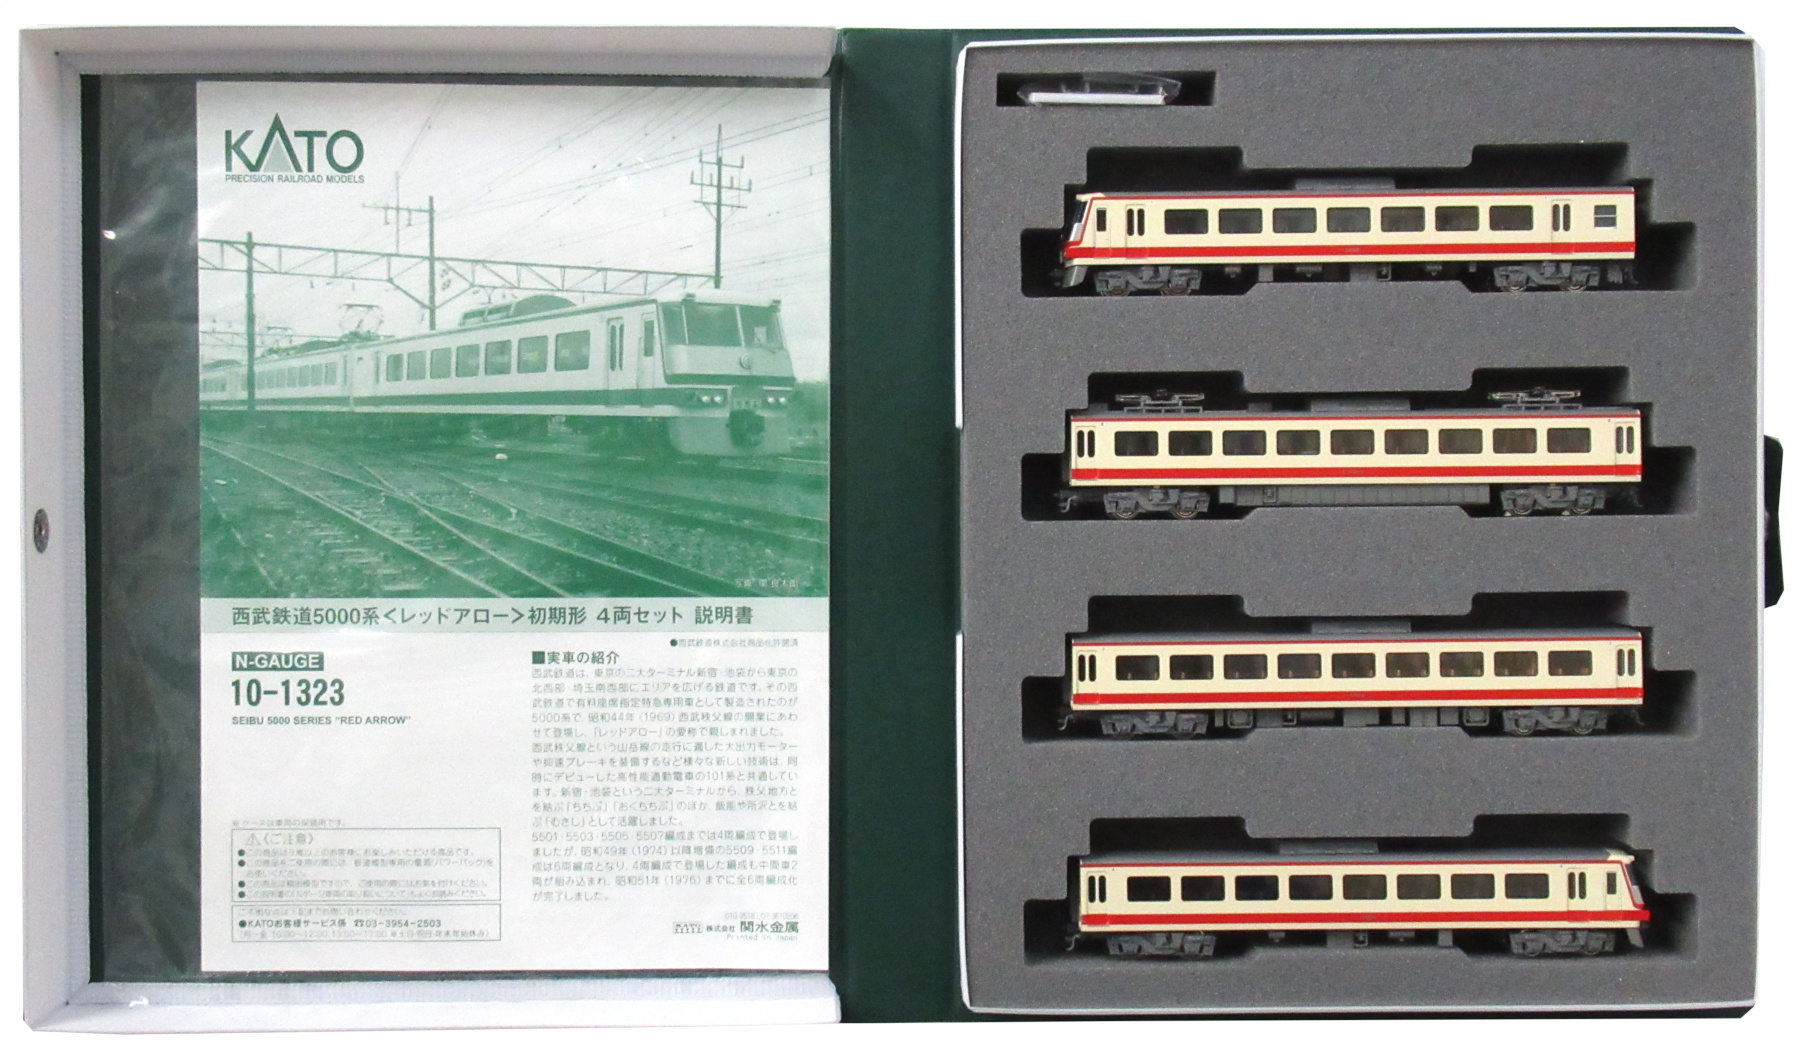 公式]鉄道模型(10-1323西武鉄道 5000系「レッドアロー」初期形 4両 